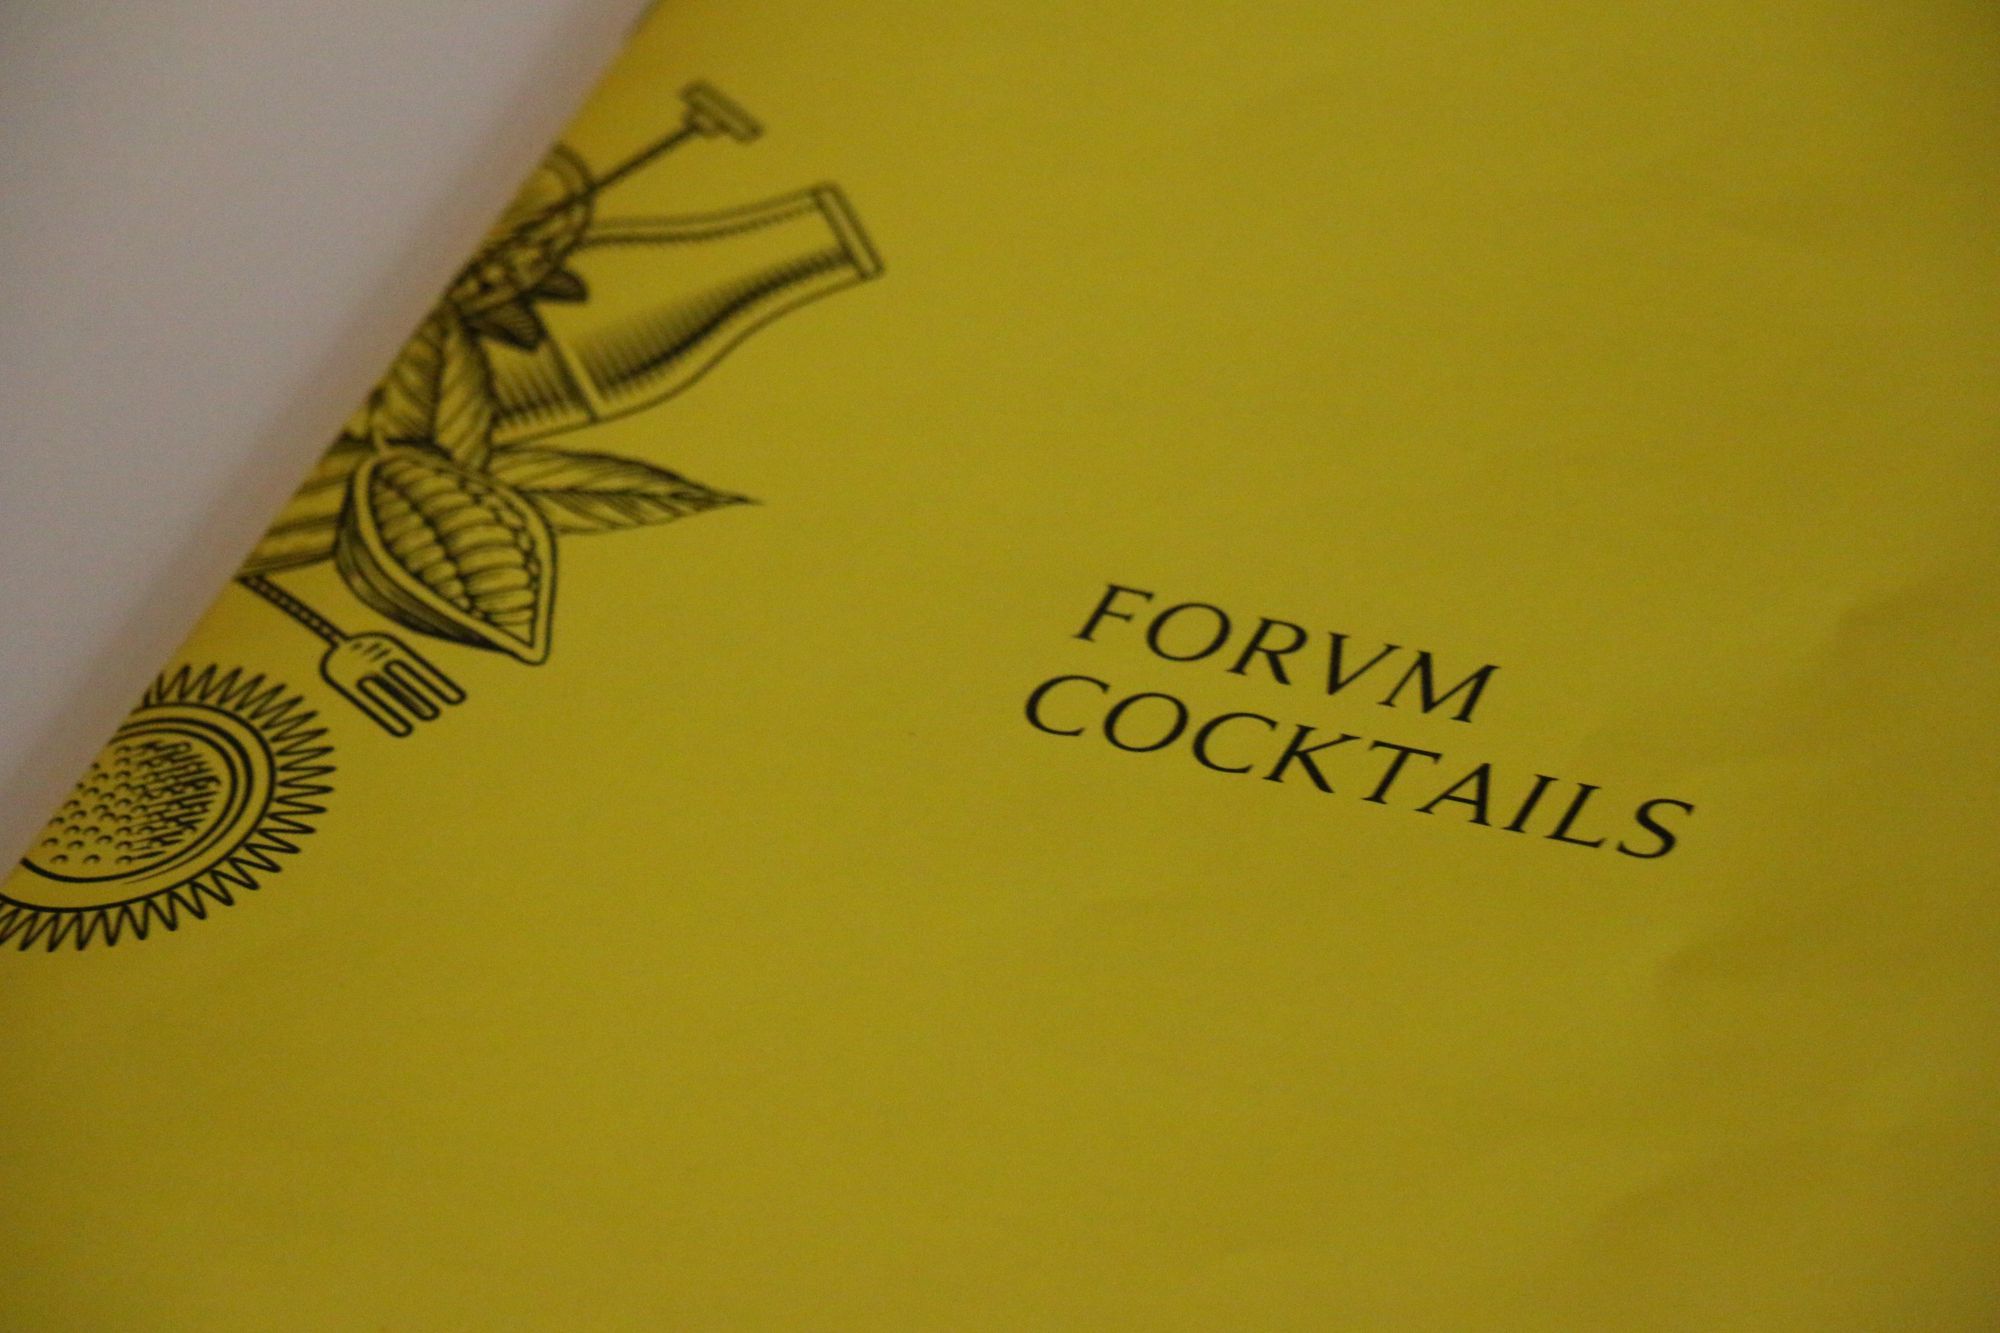 La carte des cocktails du Forvm Classic Bar.